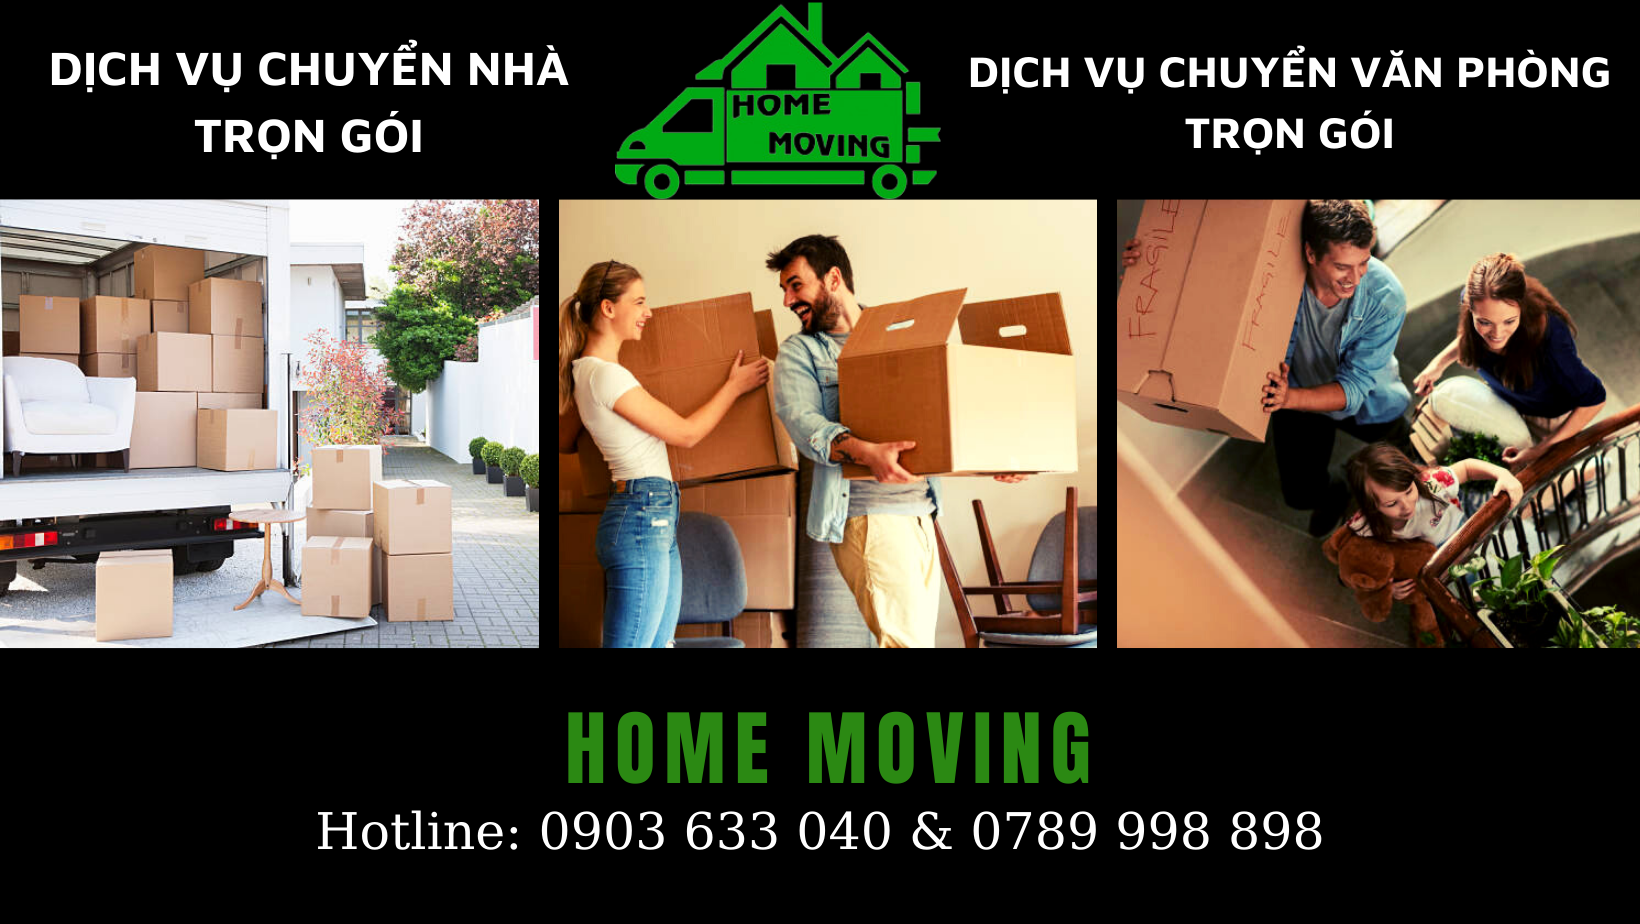 Ưu điểm khi sử dụng dịch vụ chuyển nhà trọn gói tại Home Moving